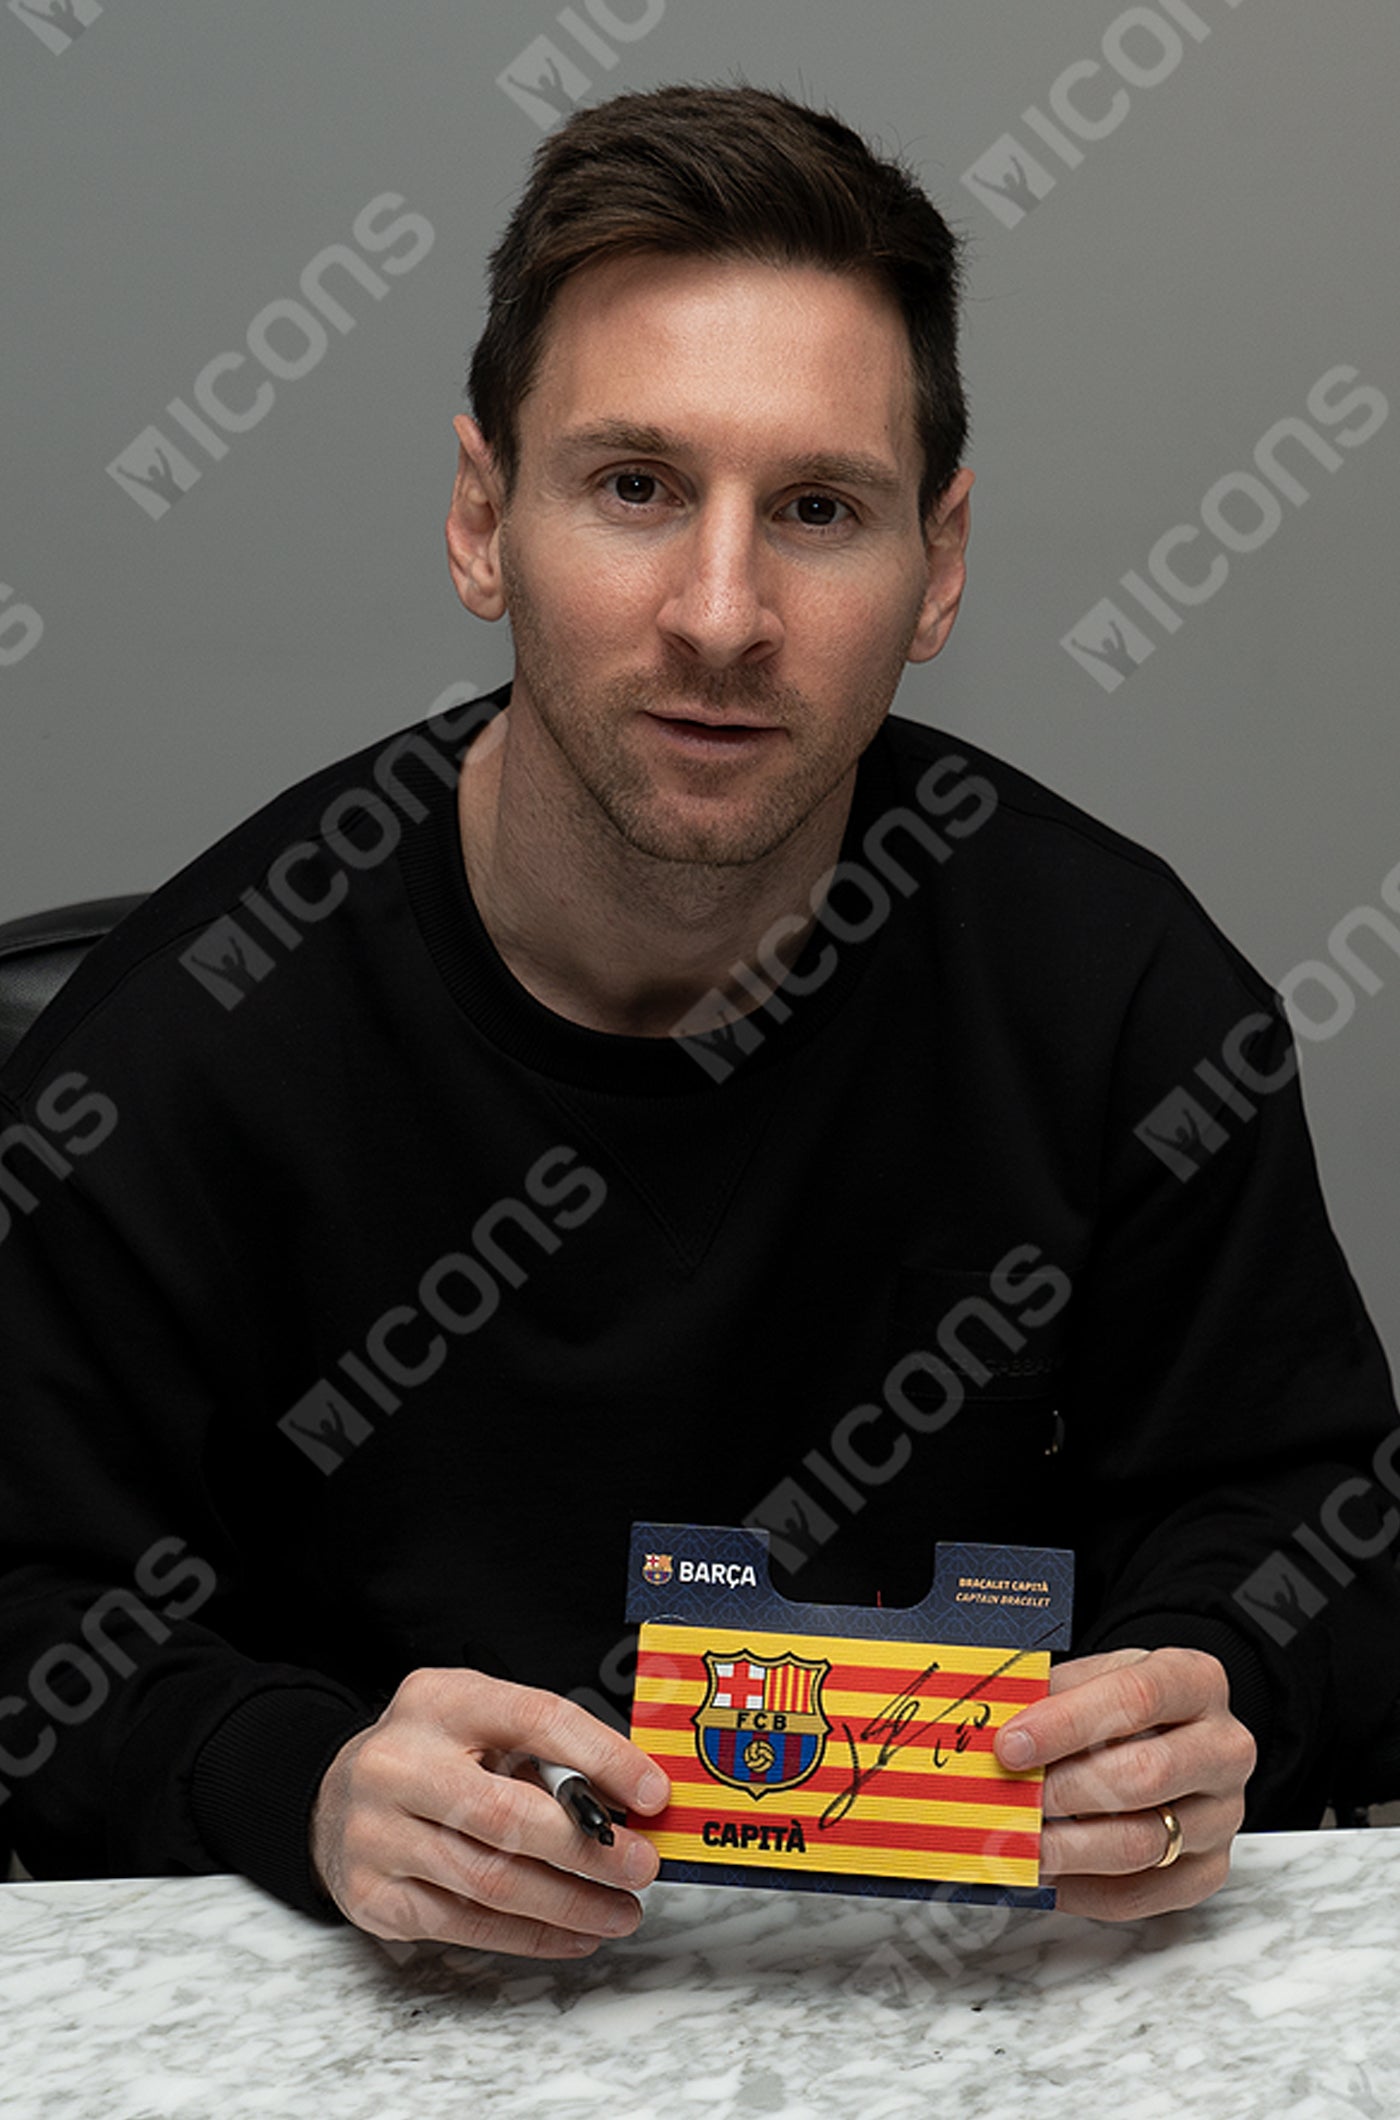 Braçalet de capità oficial del FC Barcelona signat per Leo Messi